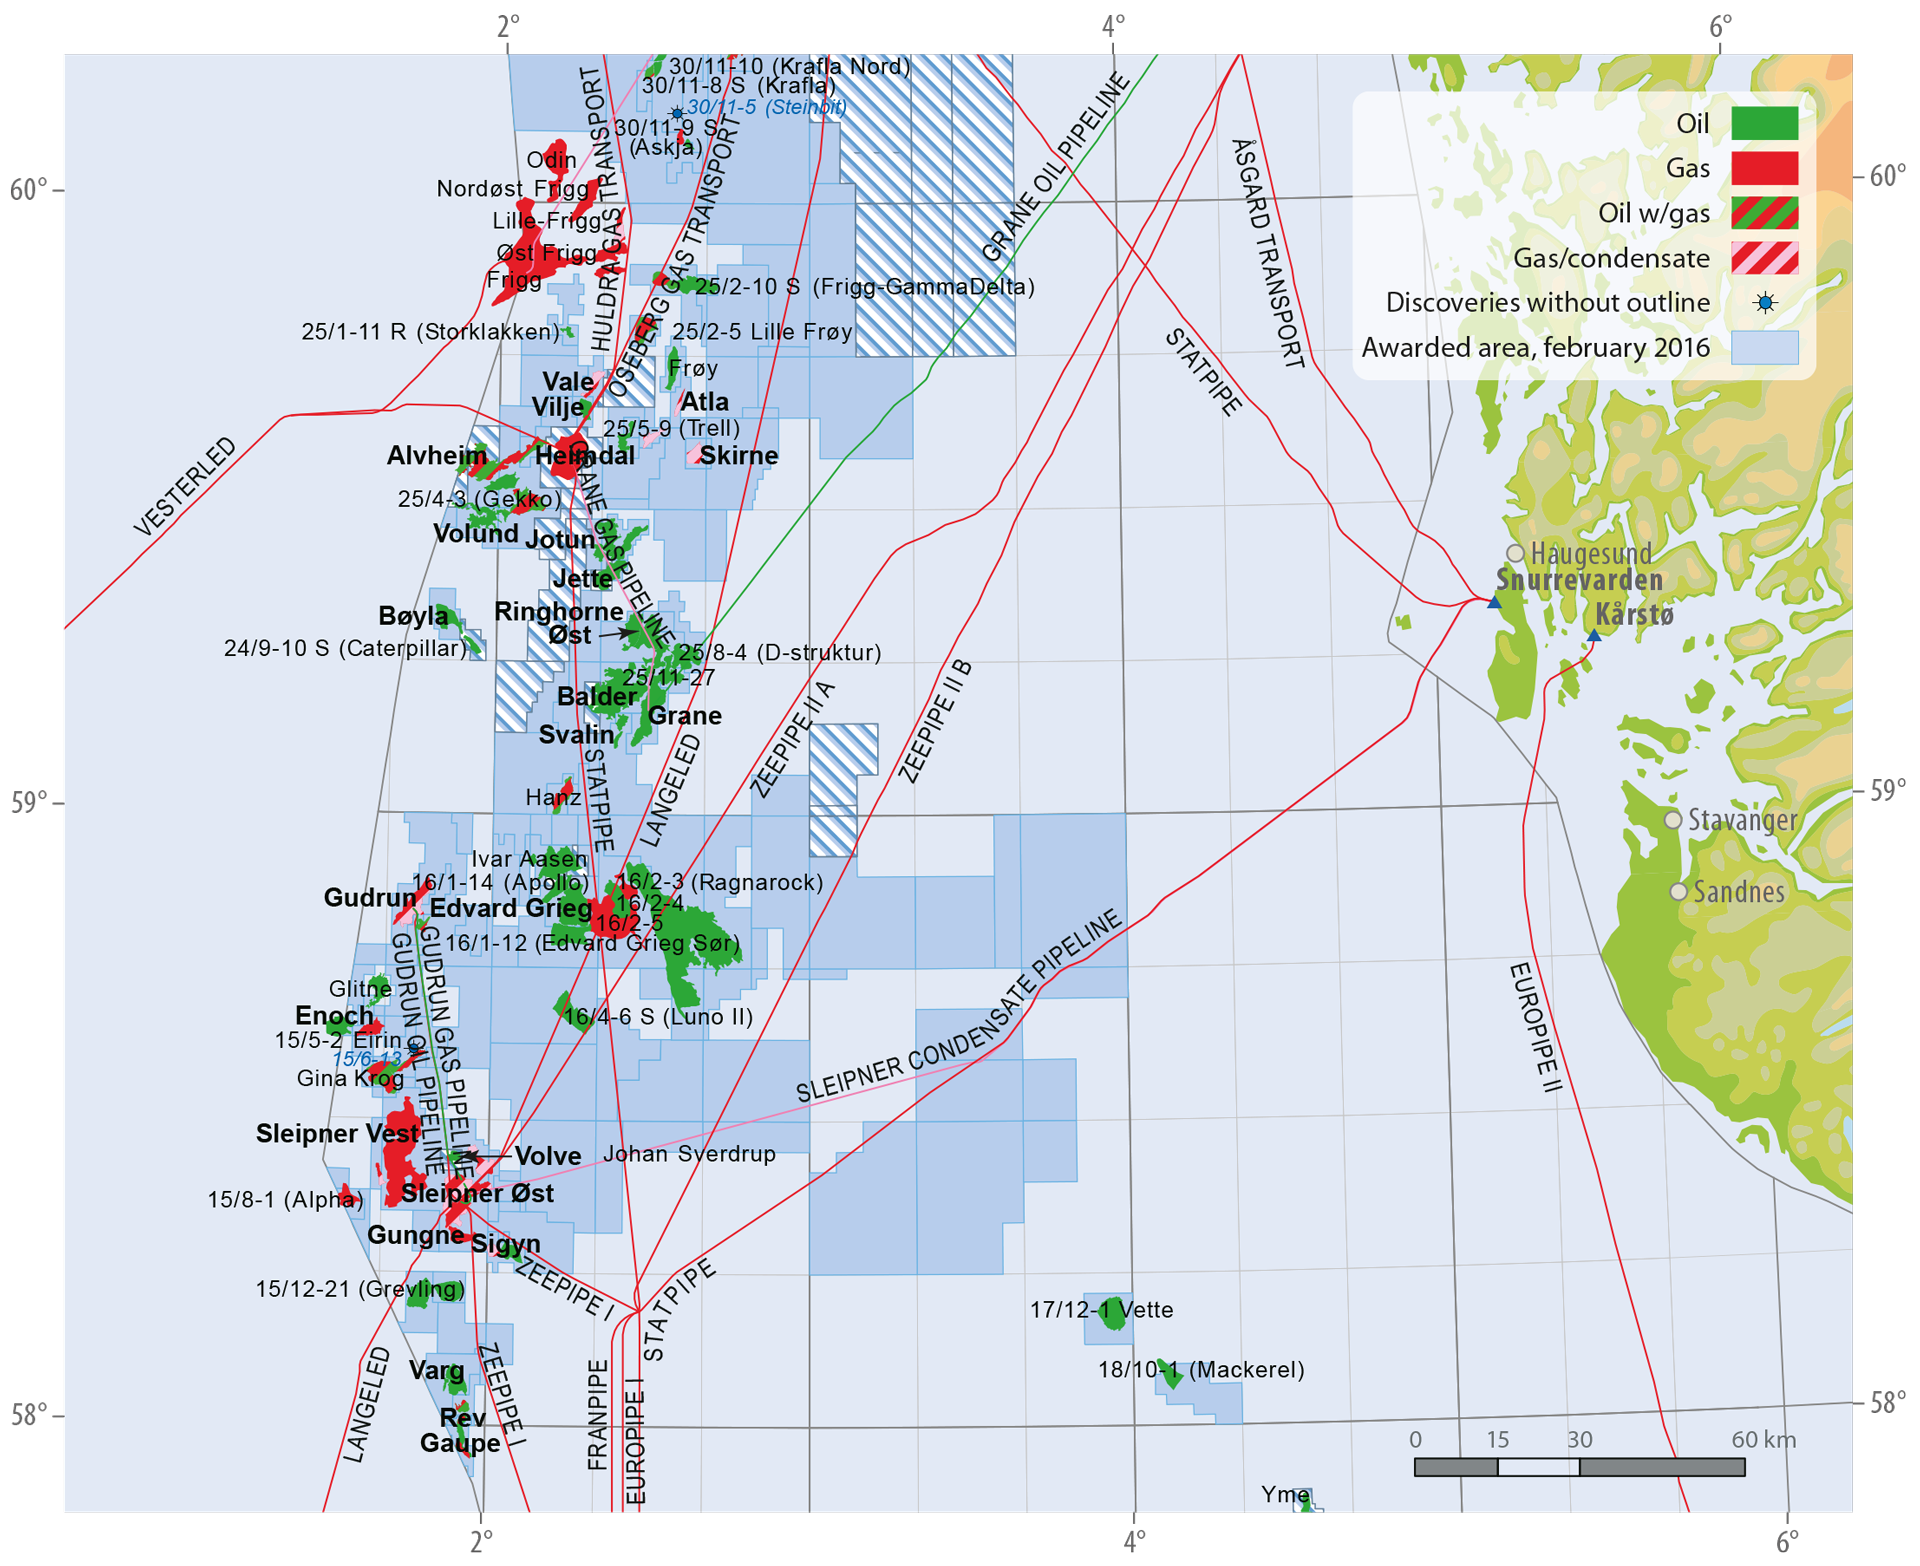 Activity per sea area - Norwegian Petroleum